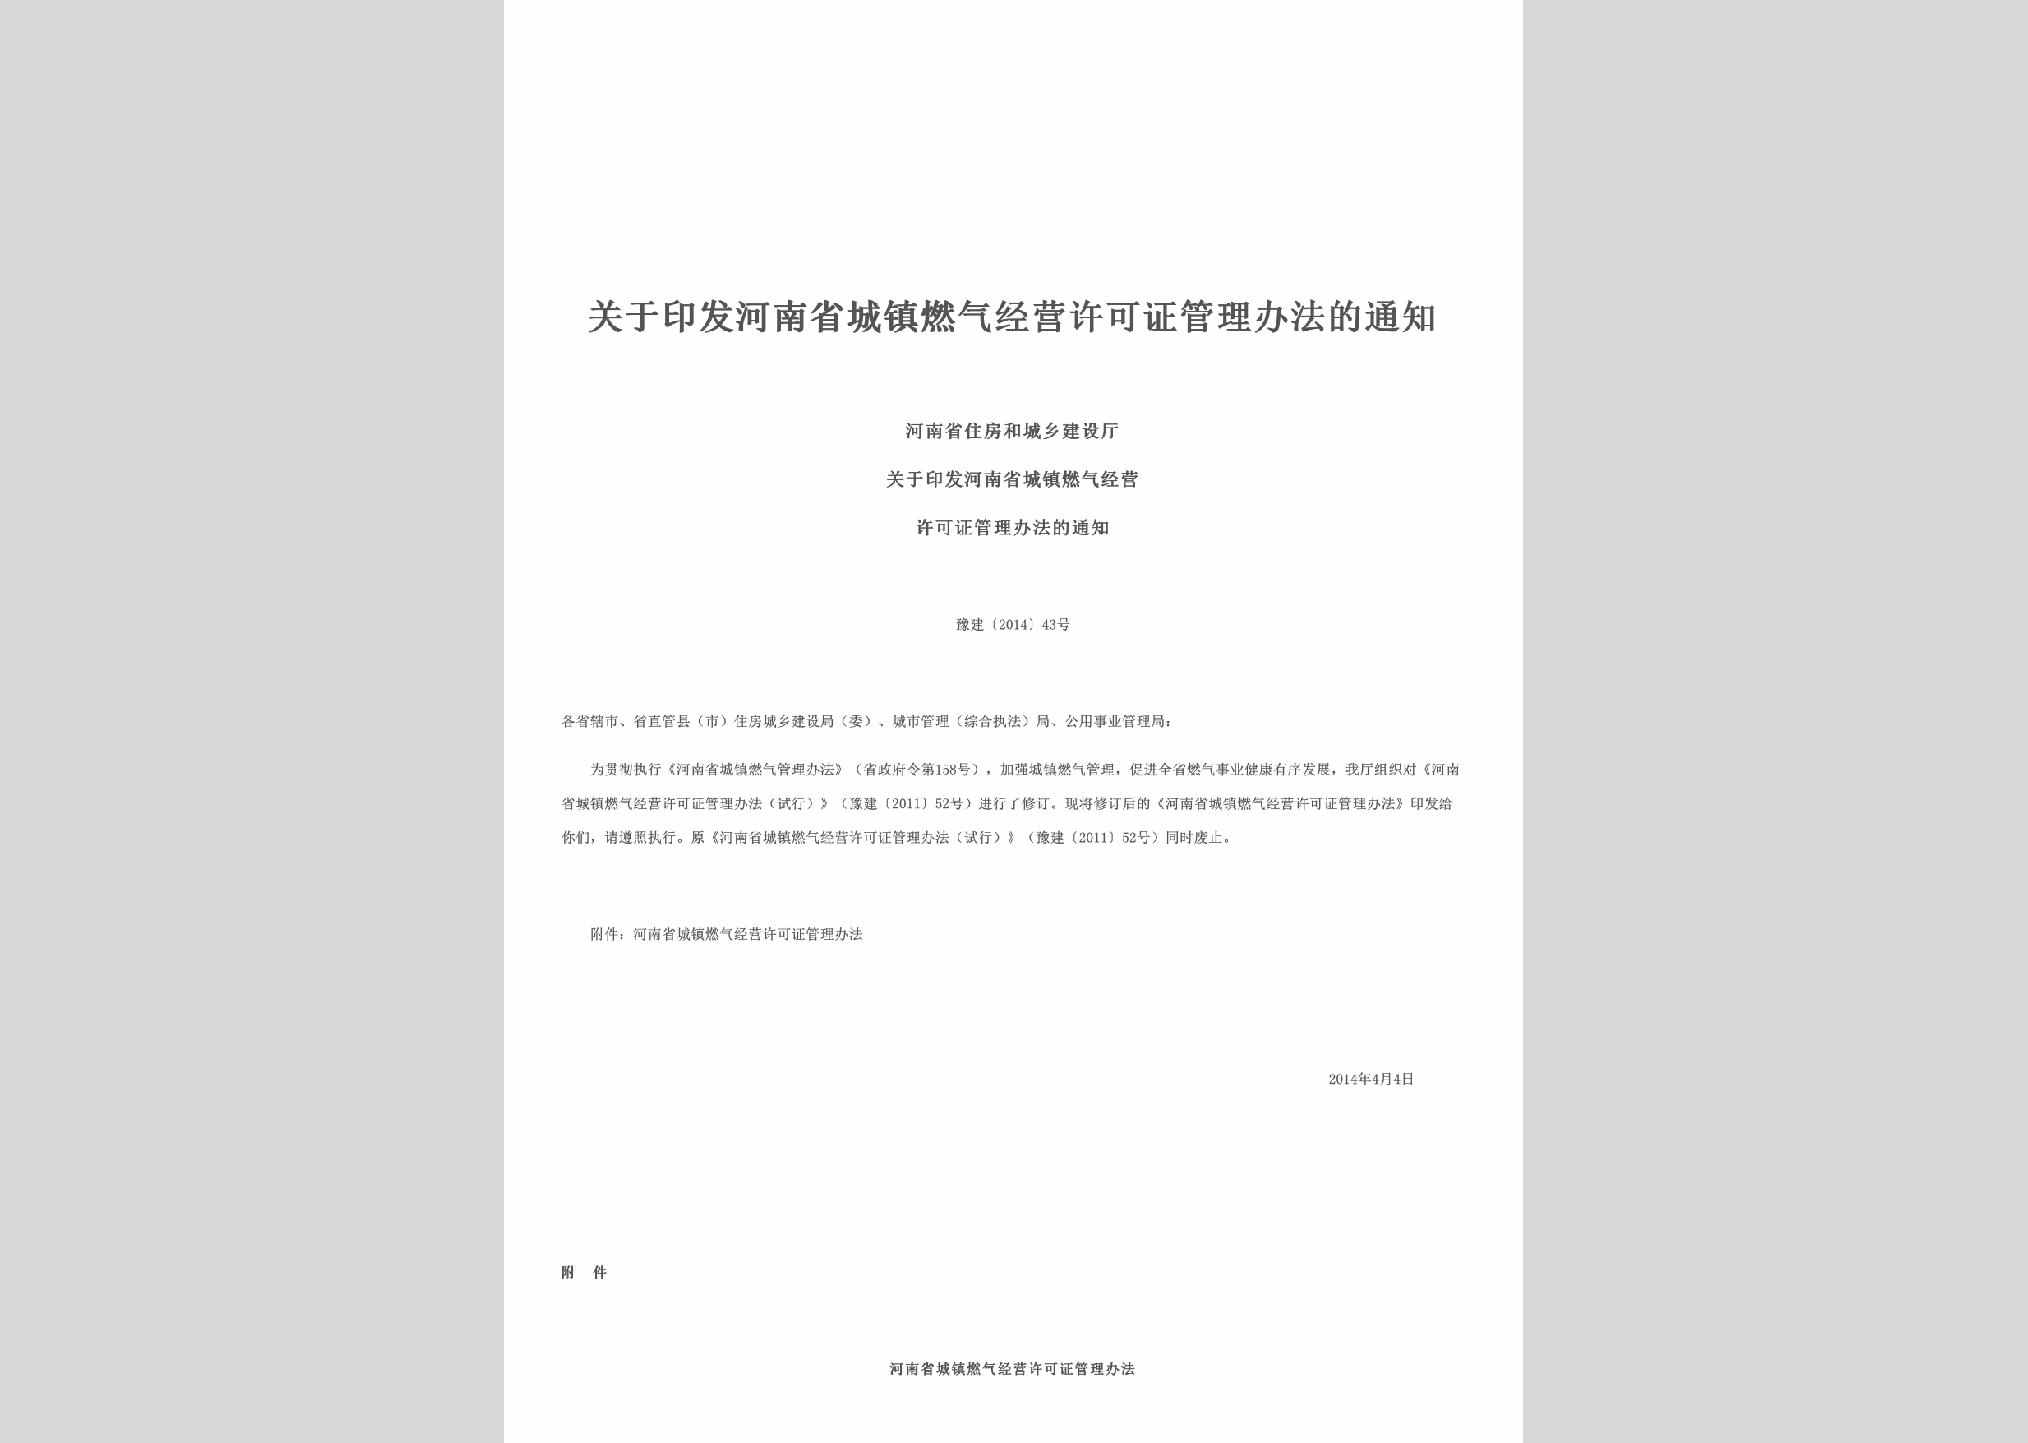 豫建[2014]43号：关于印发河南省城镇燃气经营许可证管理办法的通知